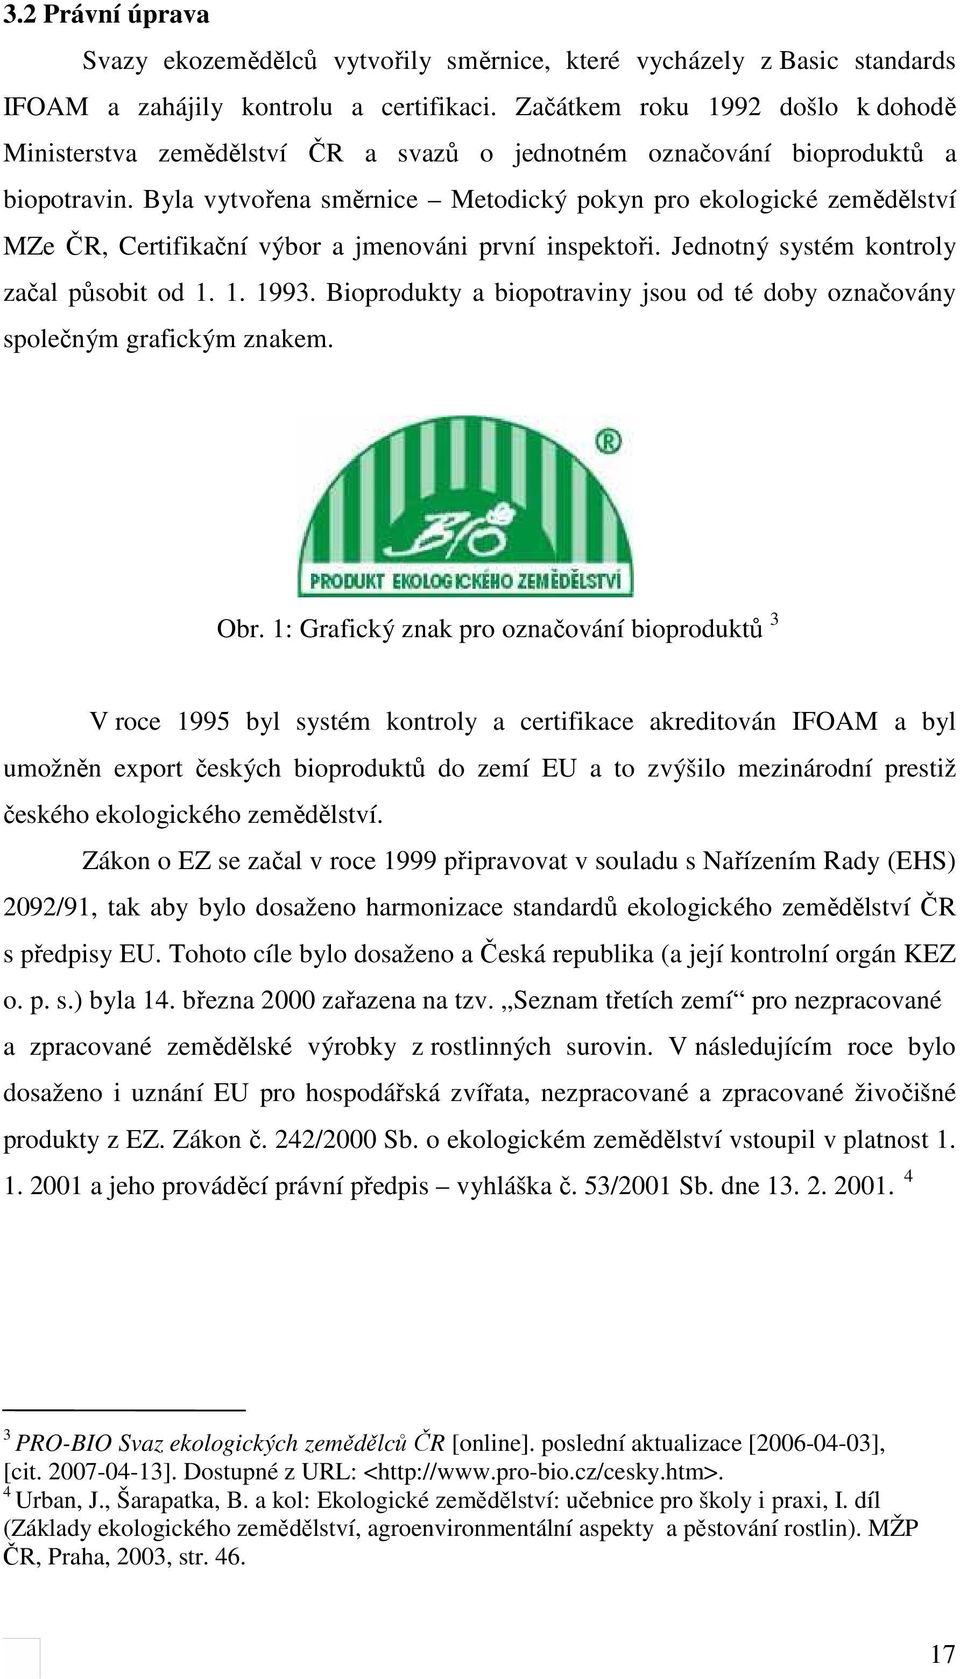 Byla vytvořena směrnice Metodický pokyn pro ekologické zemědělství MZe ČR, Certifikační výbor a jmenováni první inspektoři. Jednotný systém kontroly začal působit od 1. 1. 1993.